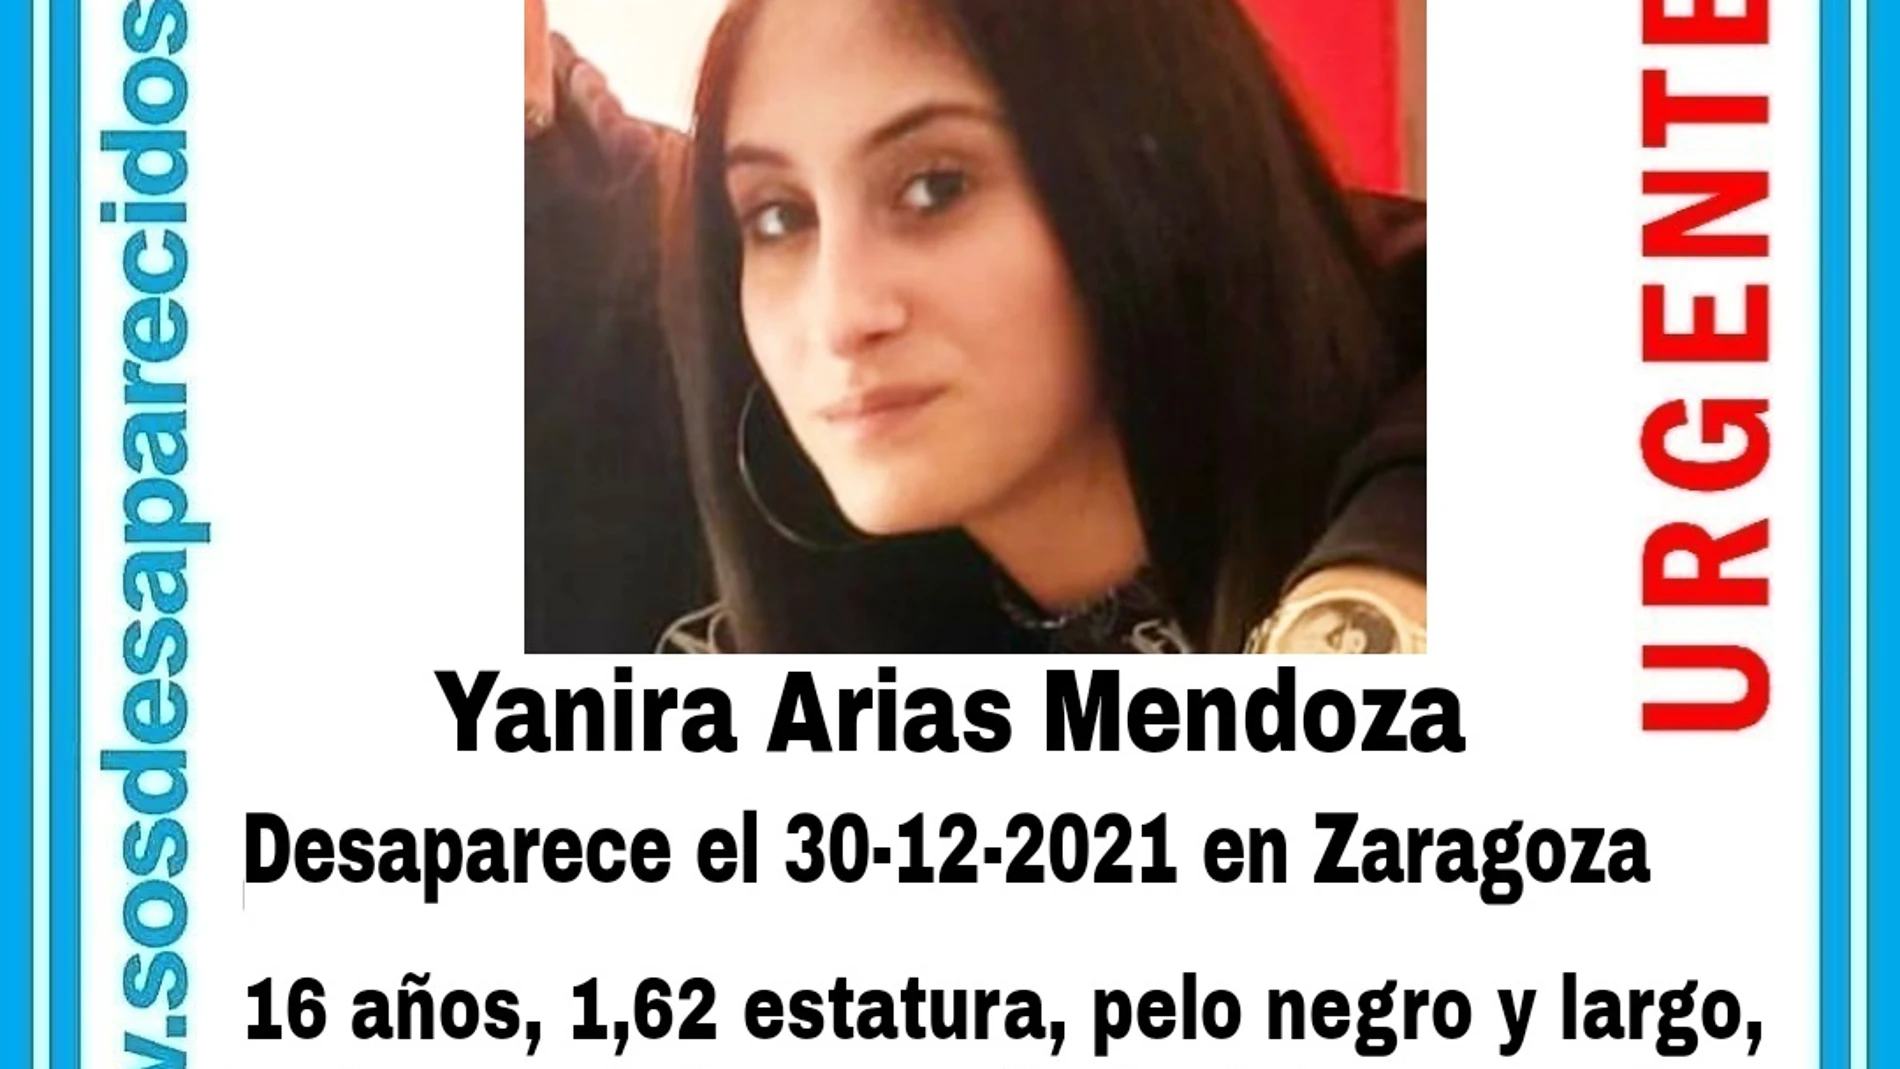 Buscan a Yanira Arias, la joven de 16 años desaparecida junto a su bebé de 3 meses en Zaragoza